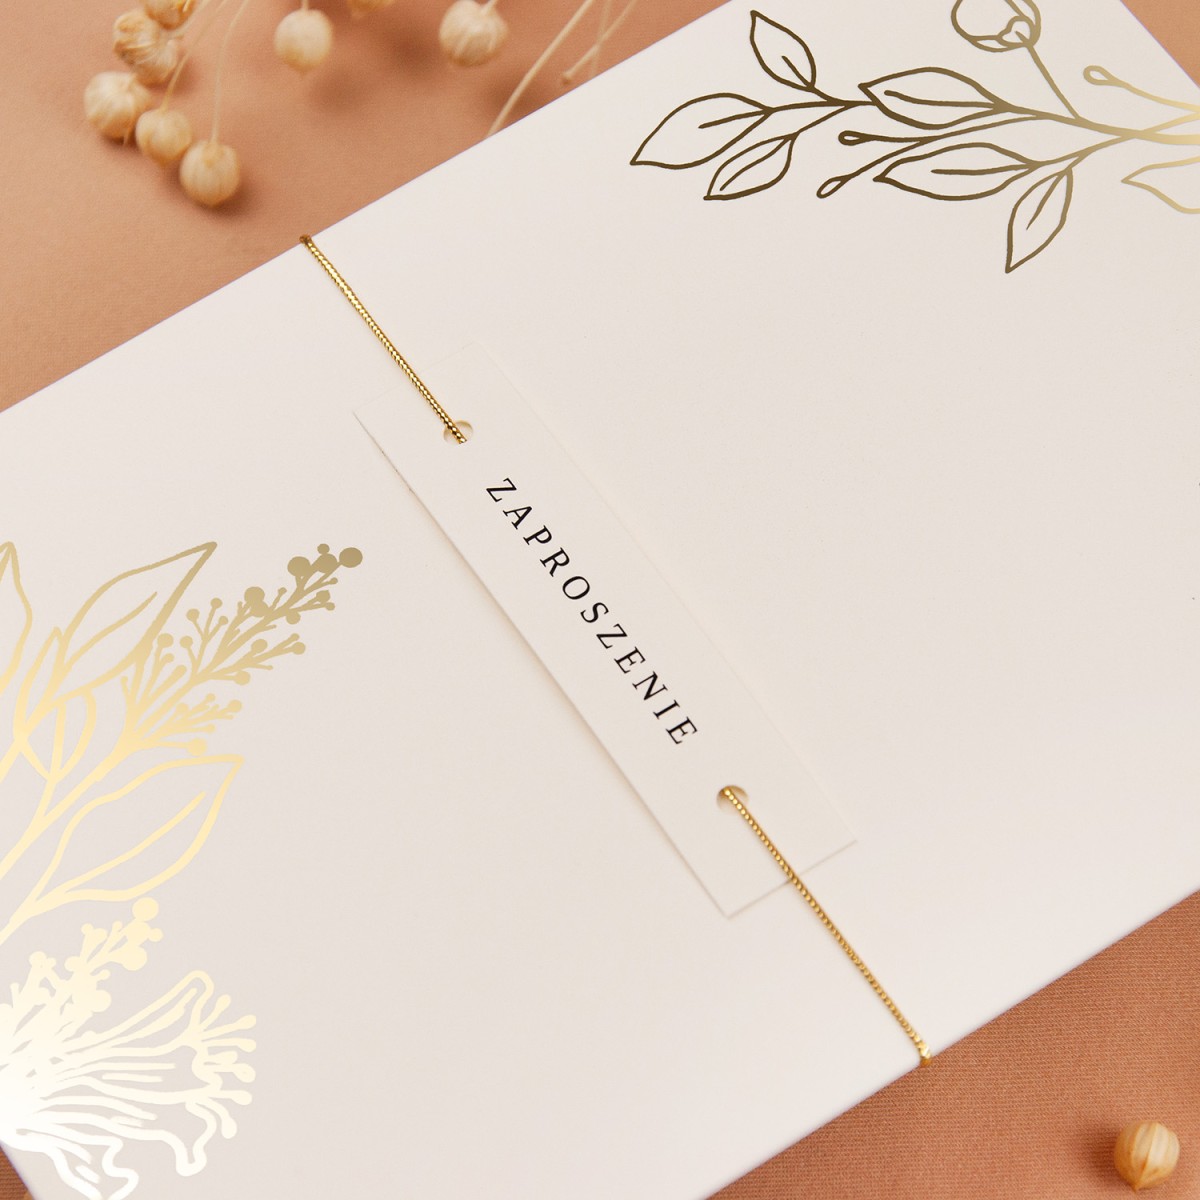 Zaproszenia Ślubne z etui w kolorze ecru i ze złoconymi gałązkami - Glamour Ecru Case - PRÓBKA